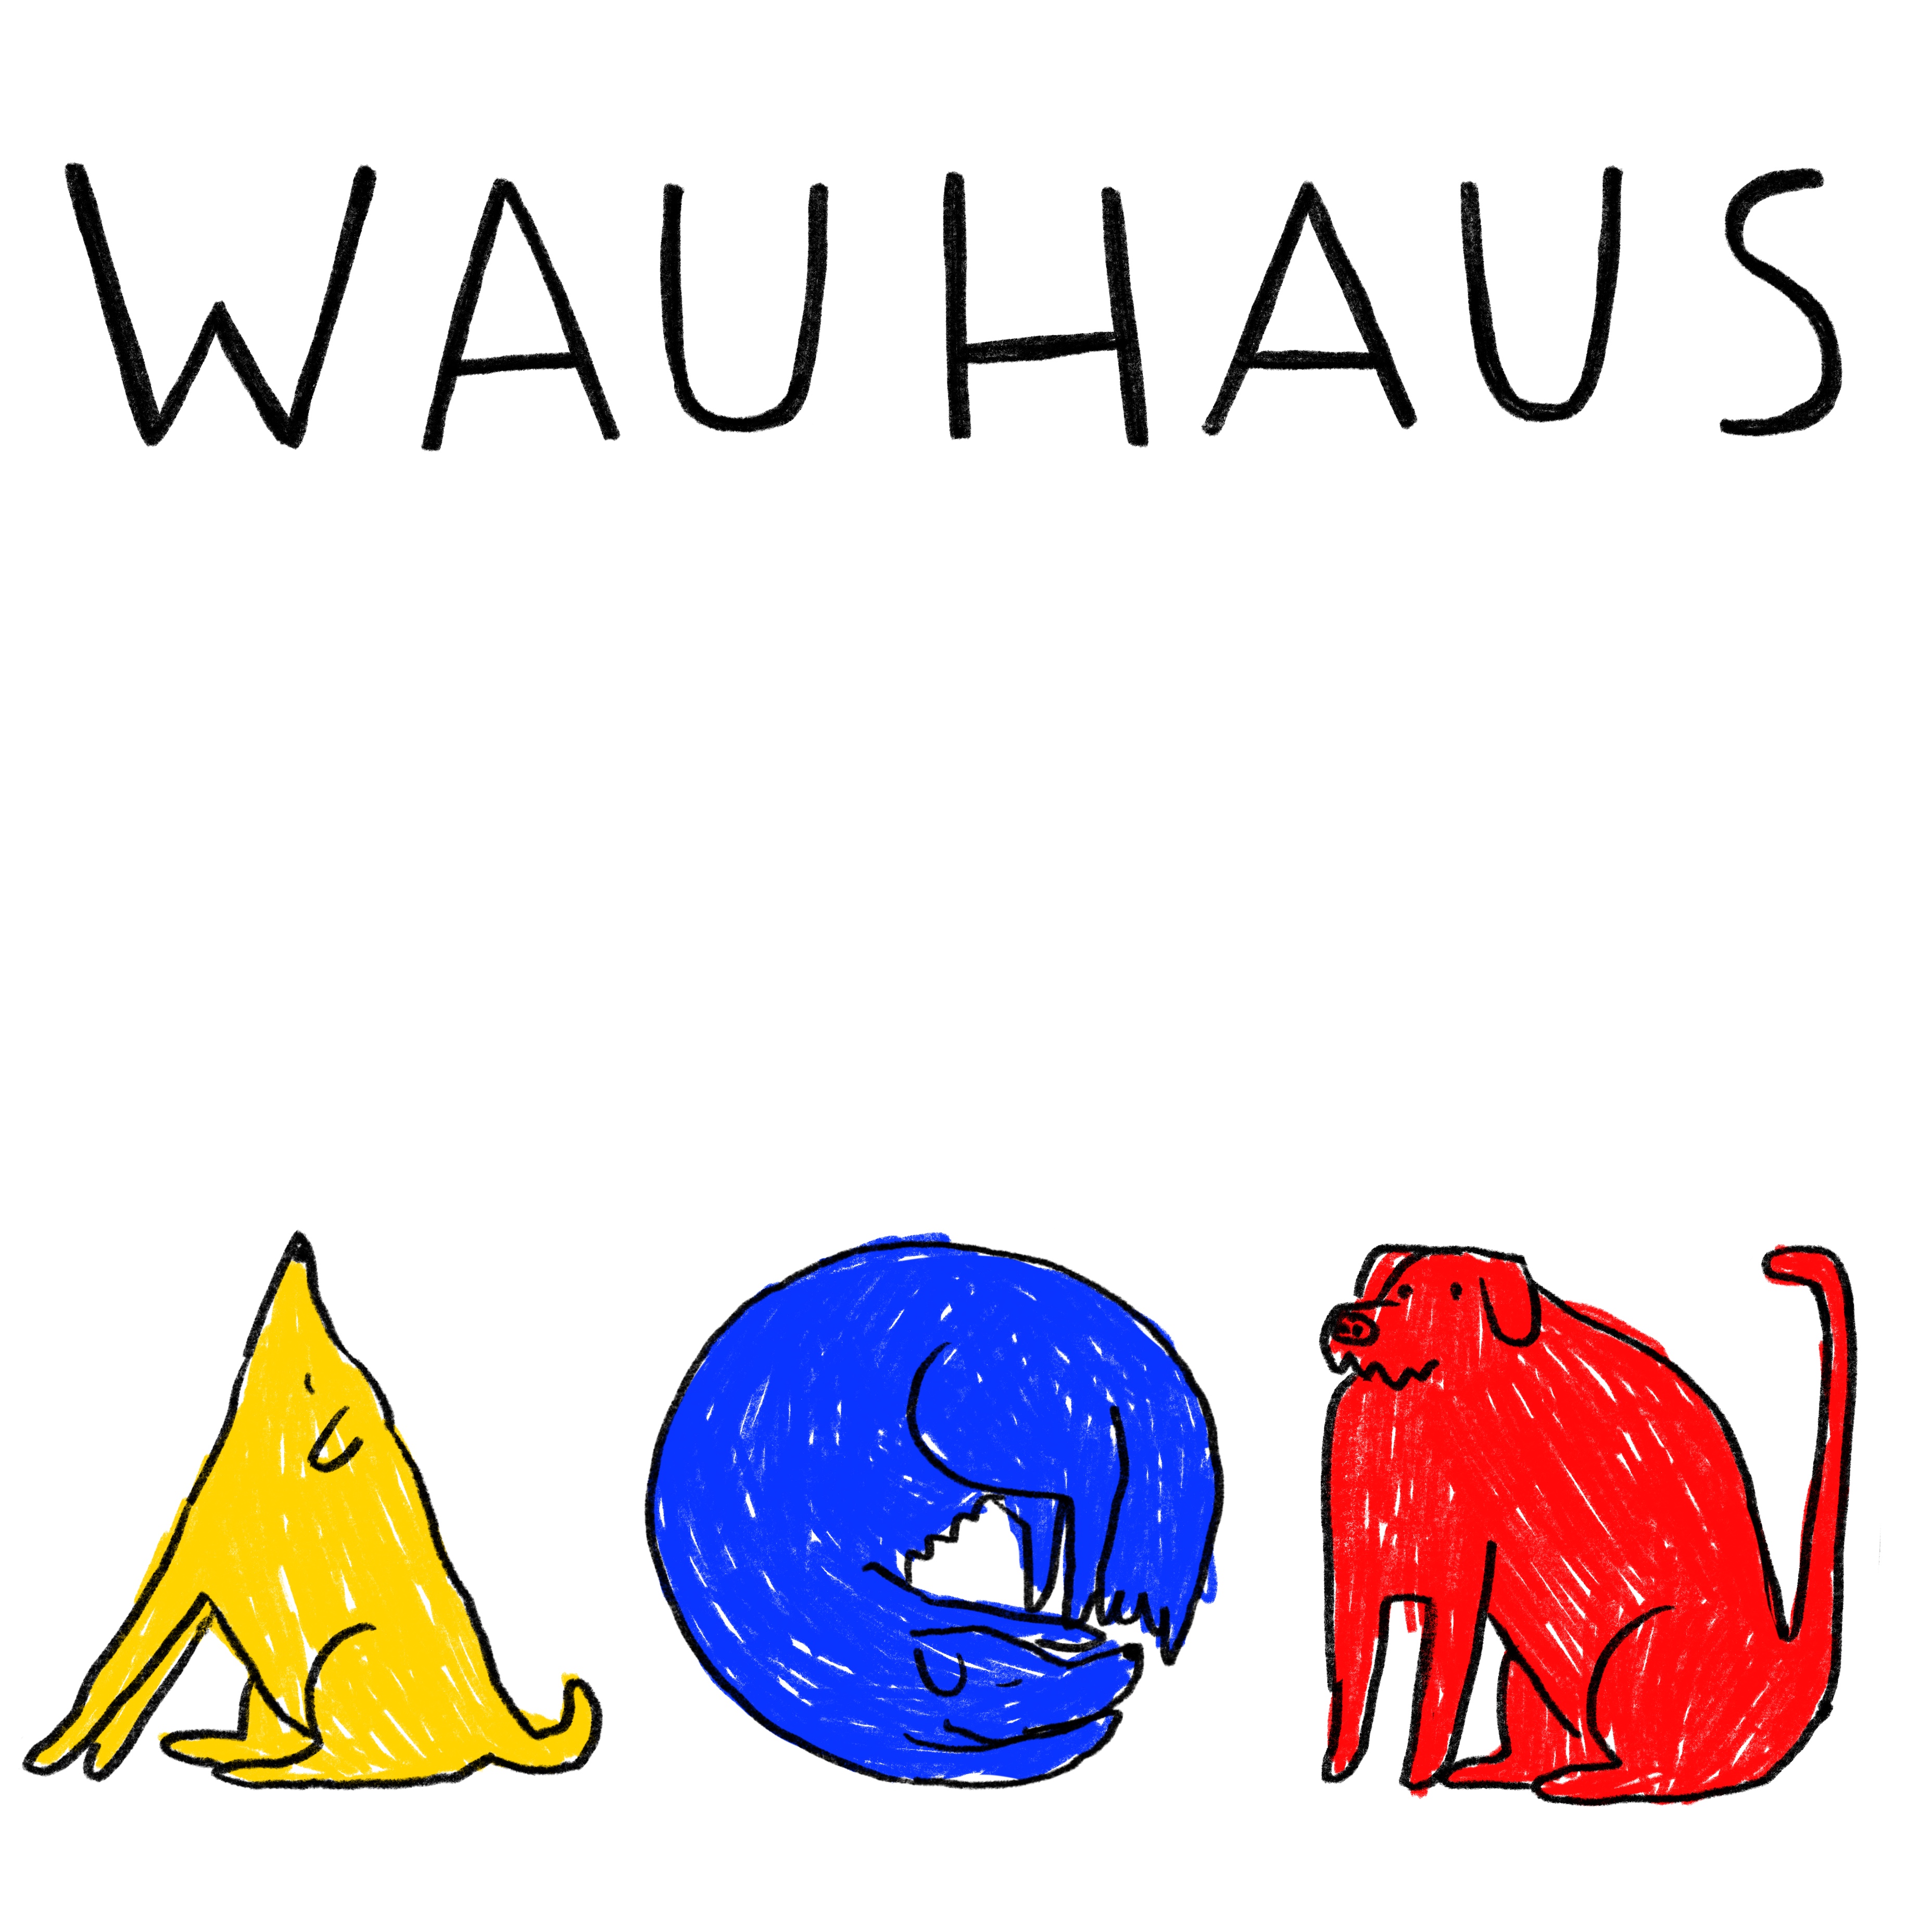 Wauhaus